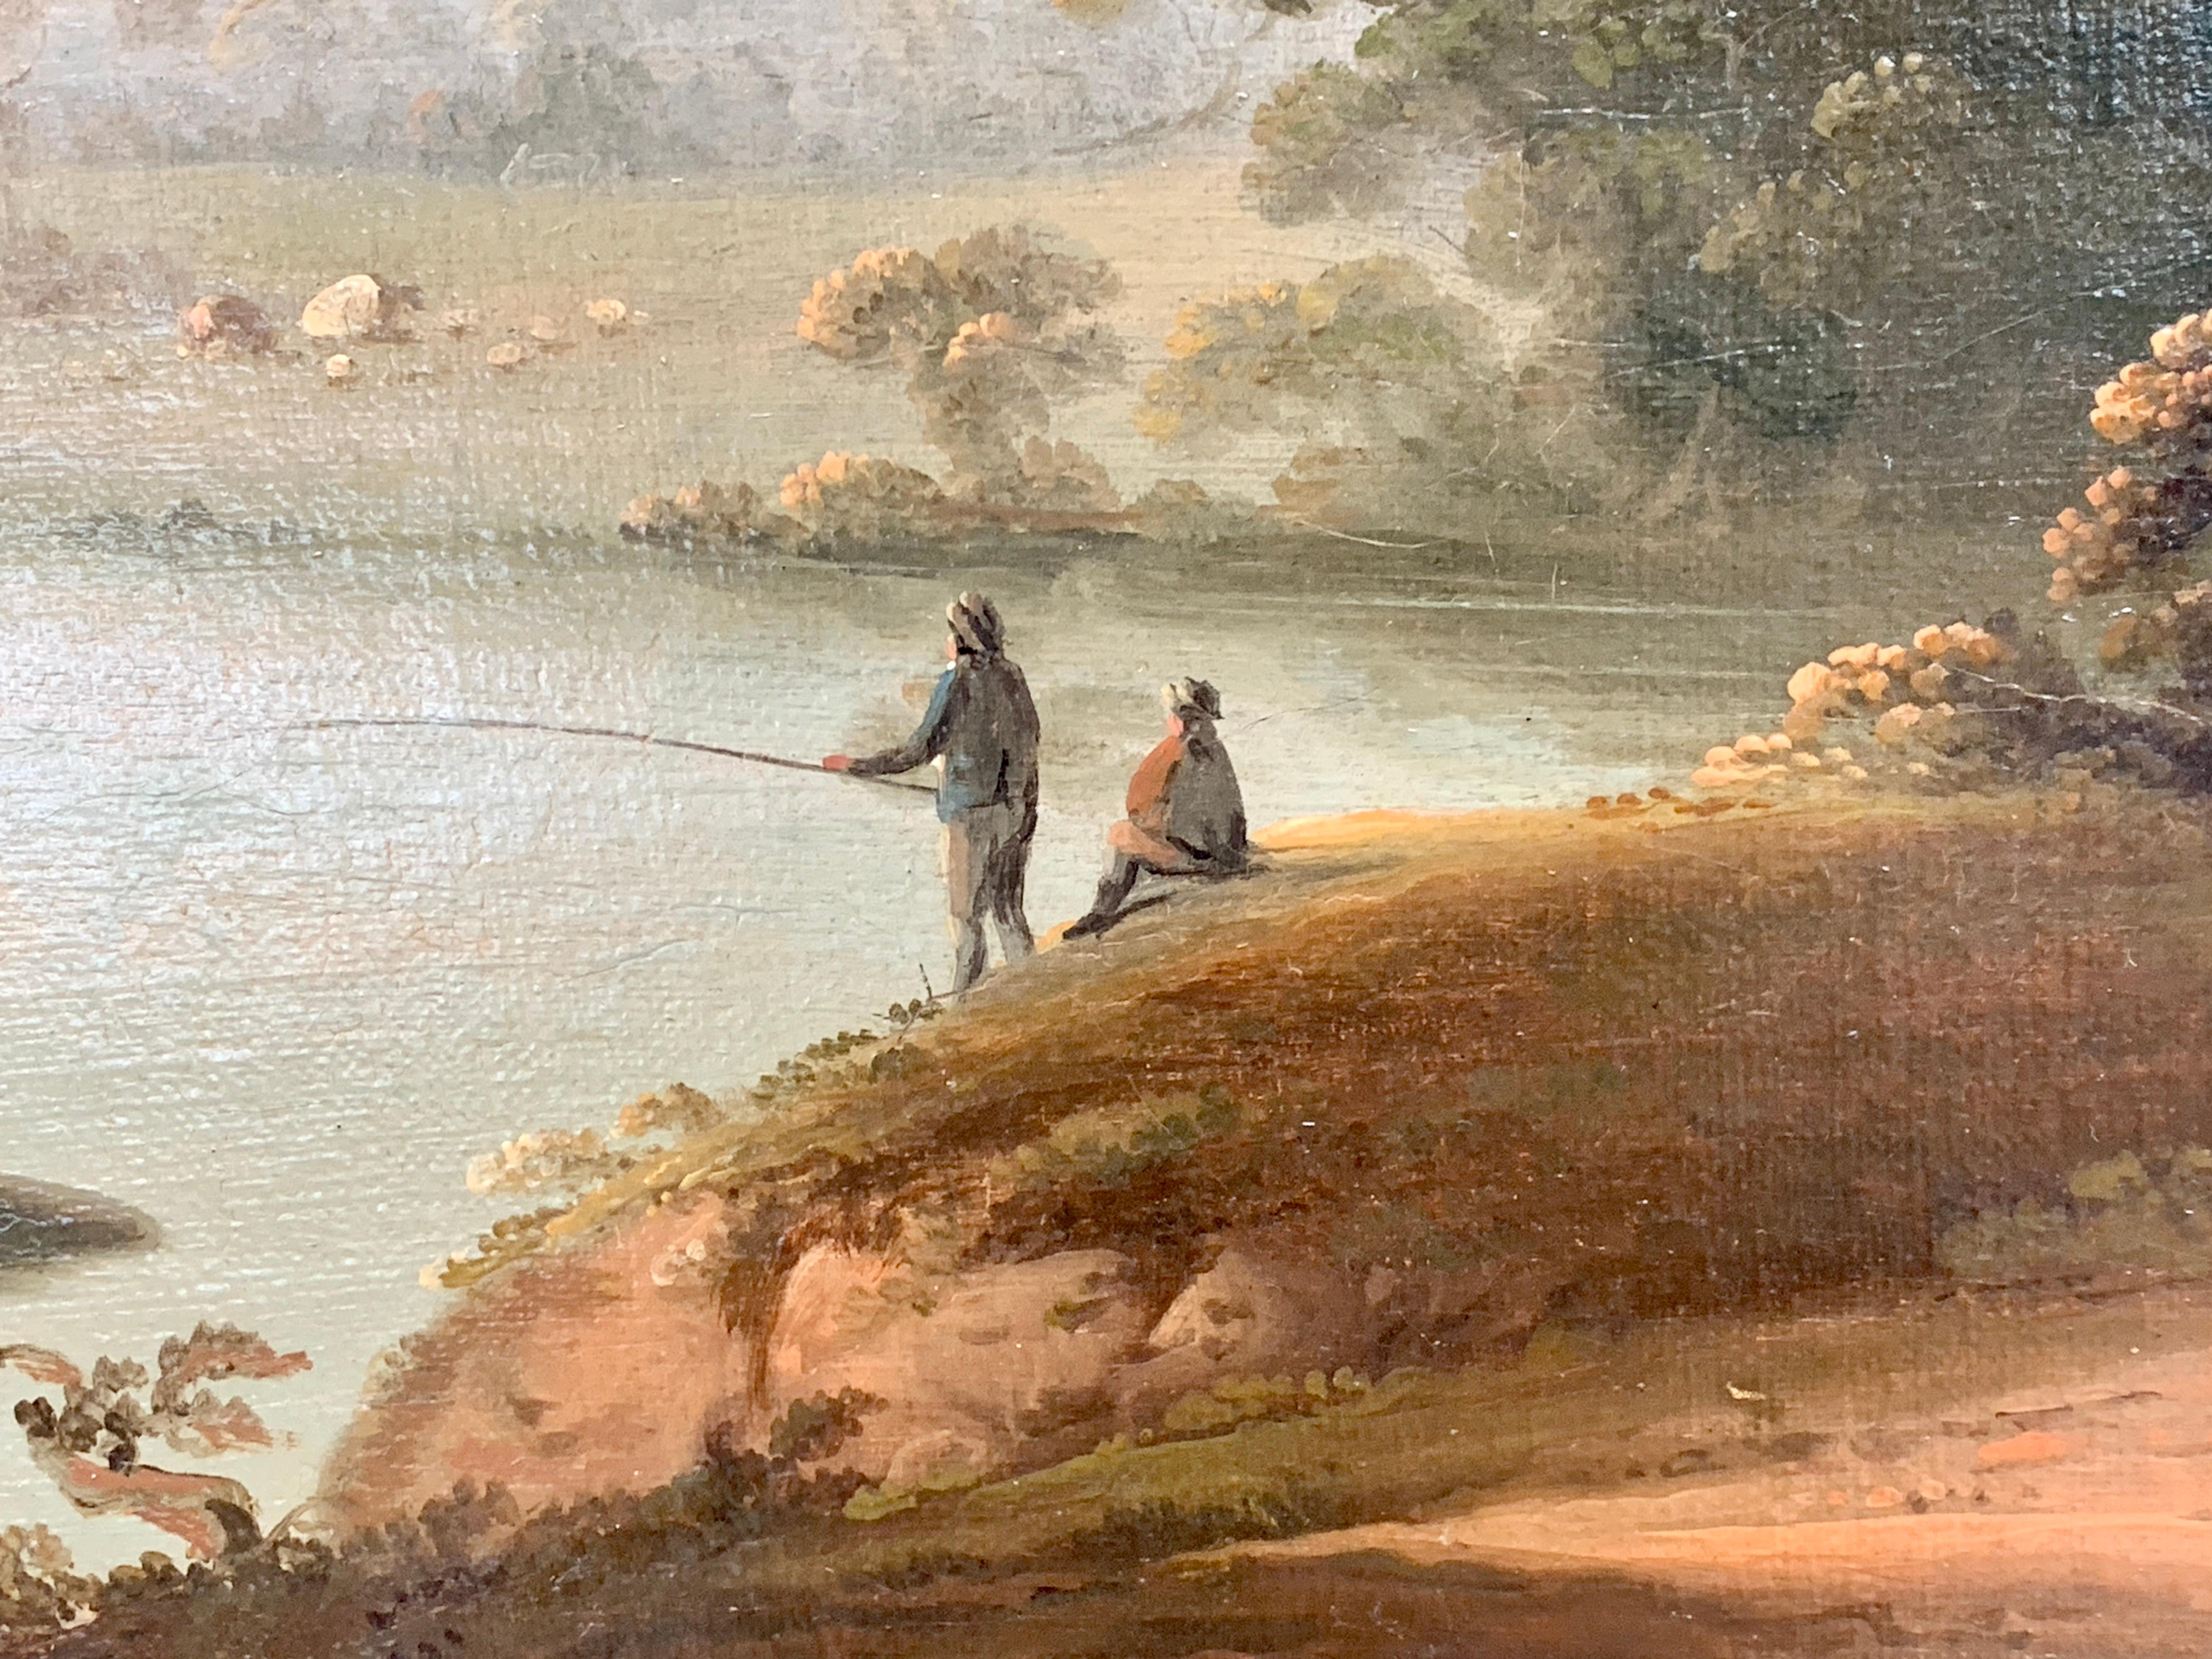 18th century fisherman